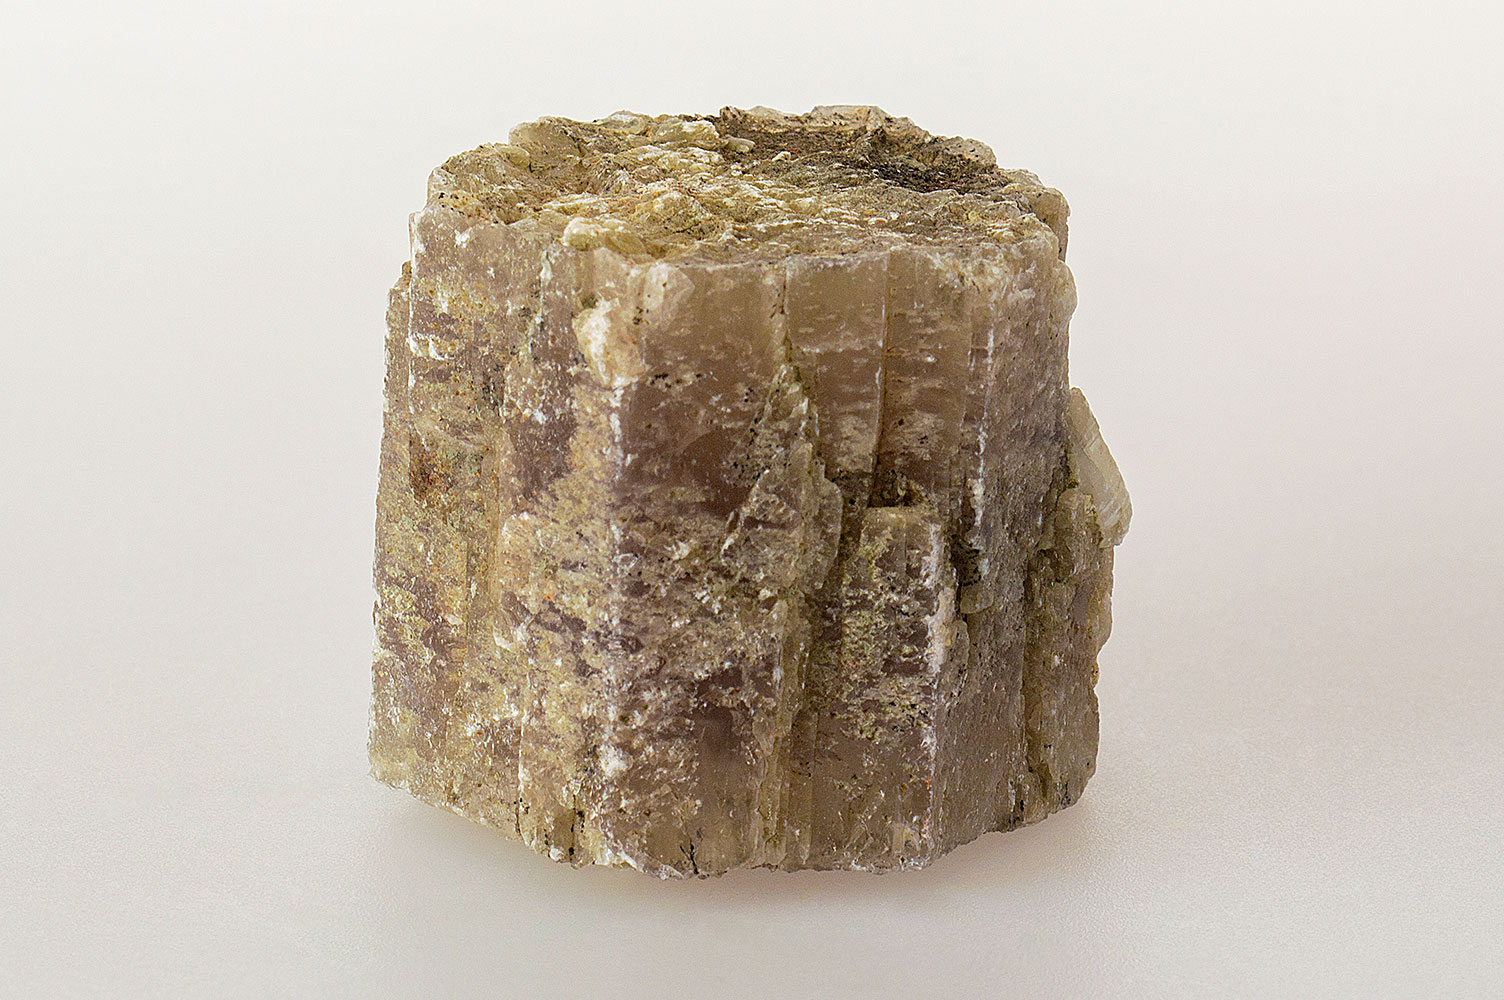 Calcium Carbonate Aragonite type - CaCO3 (Aragonite)